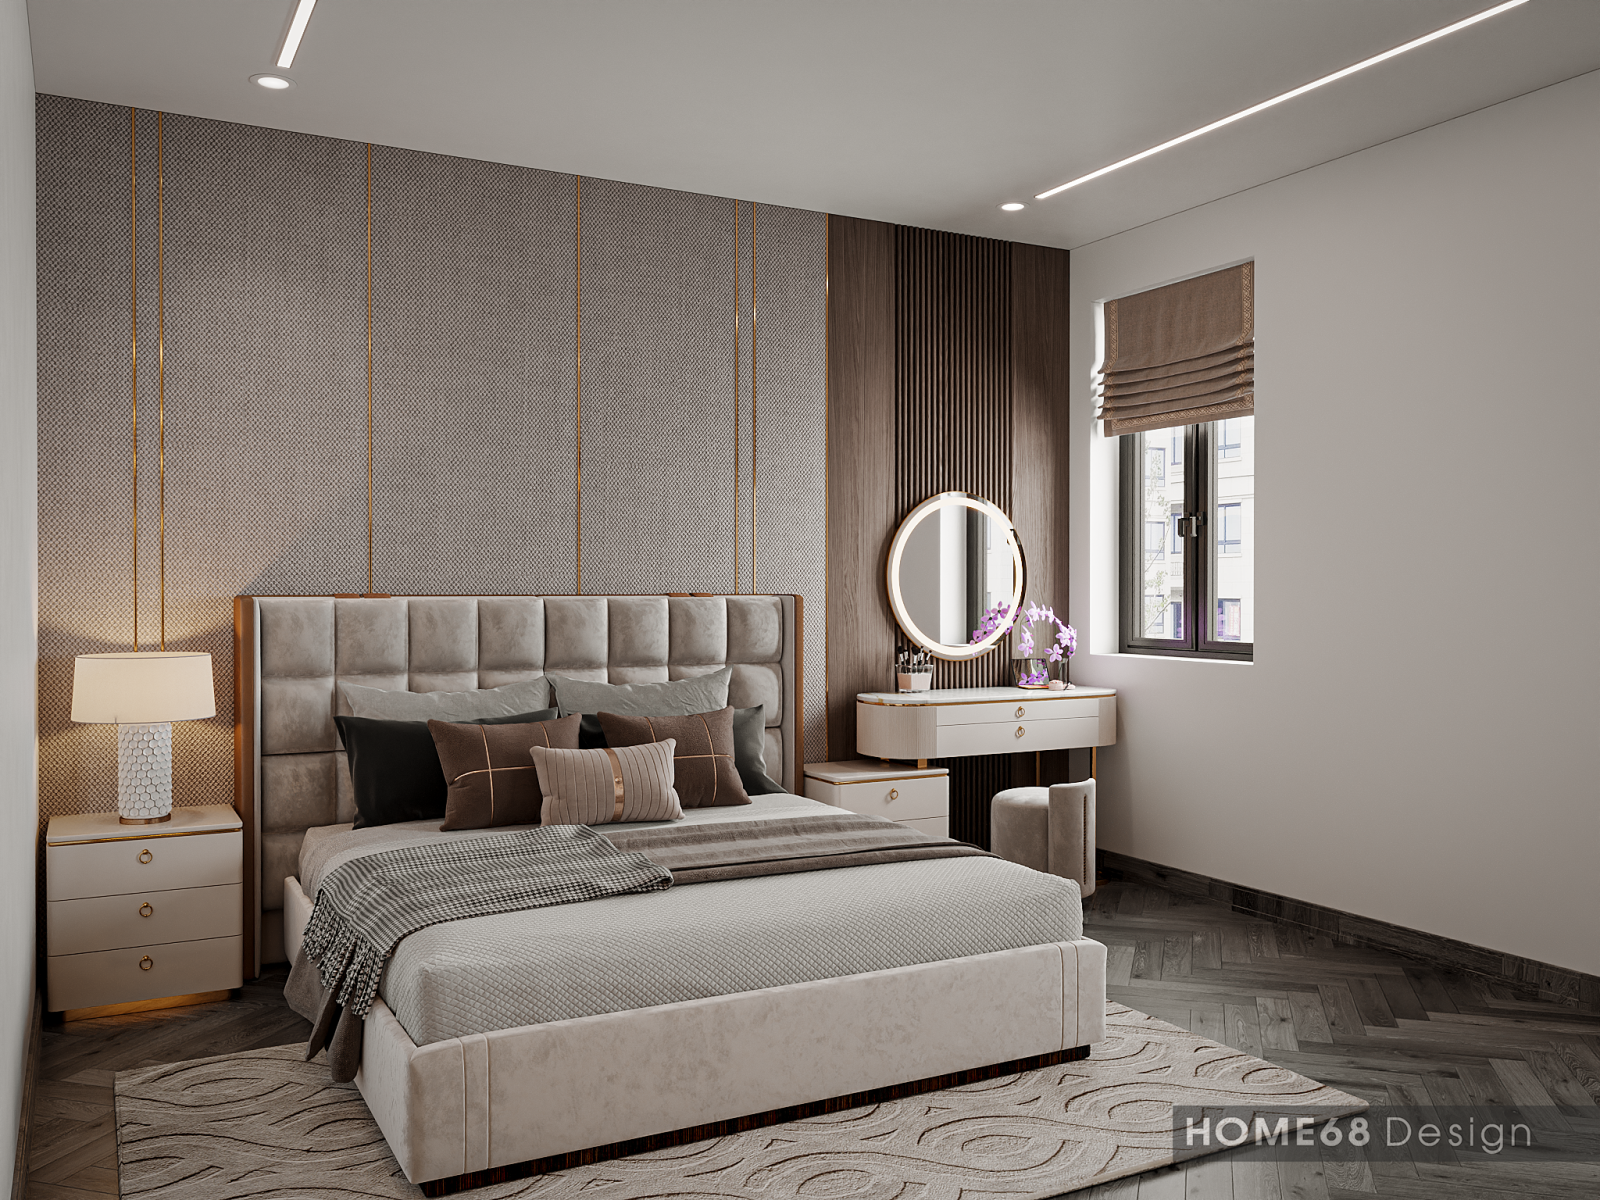 Kiến trúc gỗ được lựa chọn làm điểm chủ đạo trong nội thất của phòng ngủ